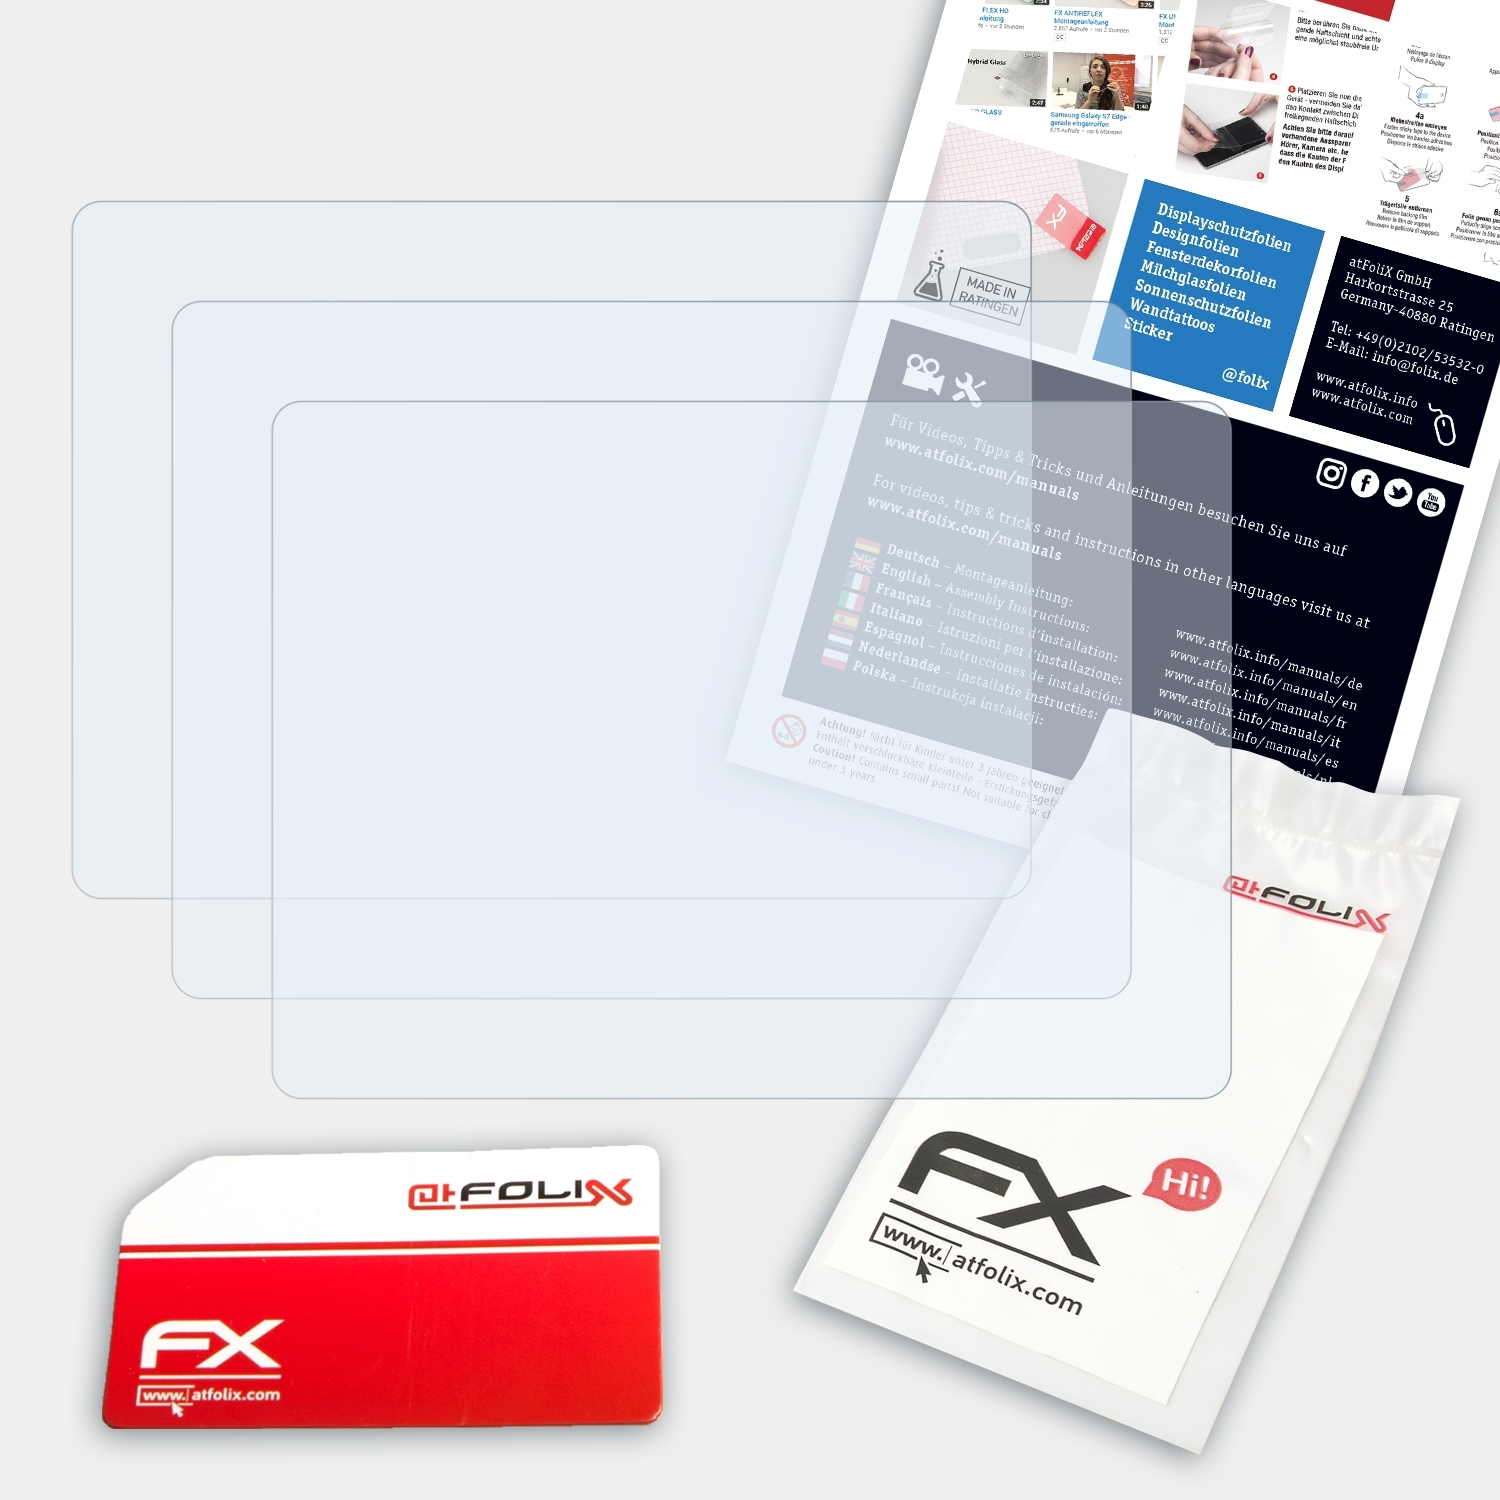 Lumix FX-Clear Displayschutz(für 3x ATFOLIX Panasonic DMC-TZ3)